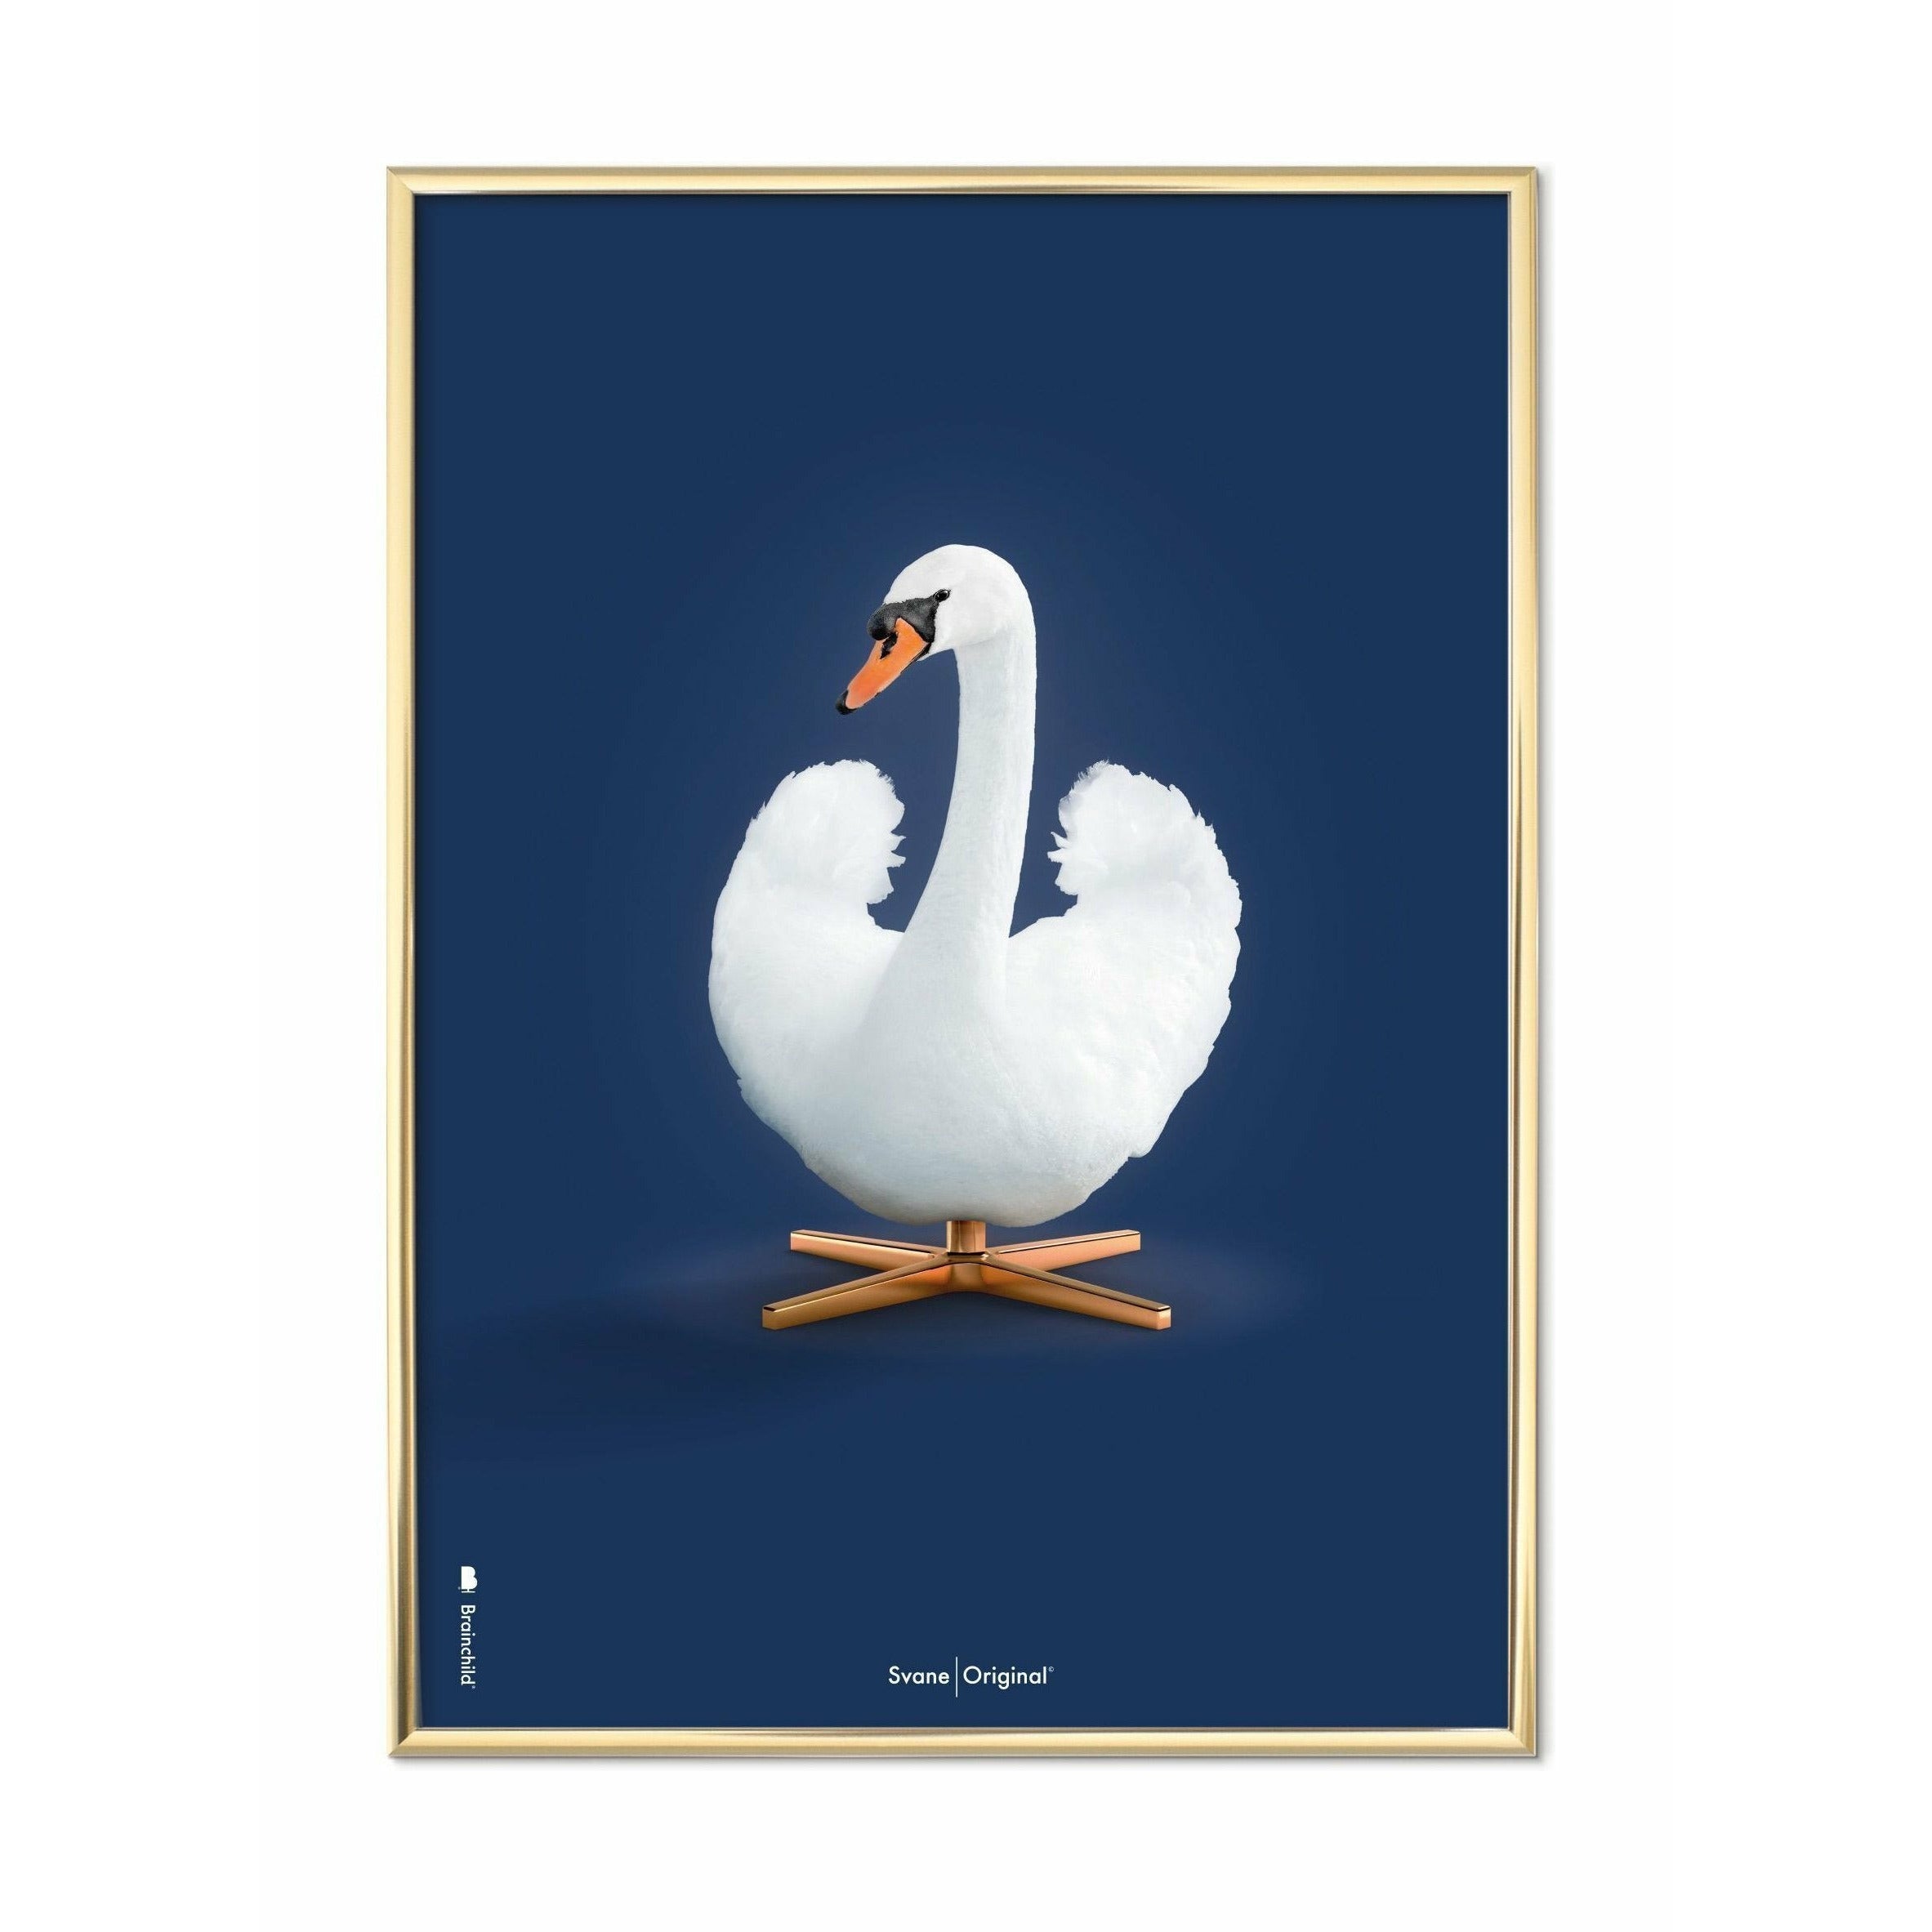 Pomysły Swan Classic plakat, mosiężna rama 50x70 cm, ciemnoniebieskie tło